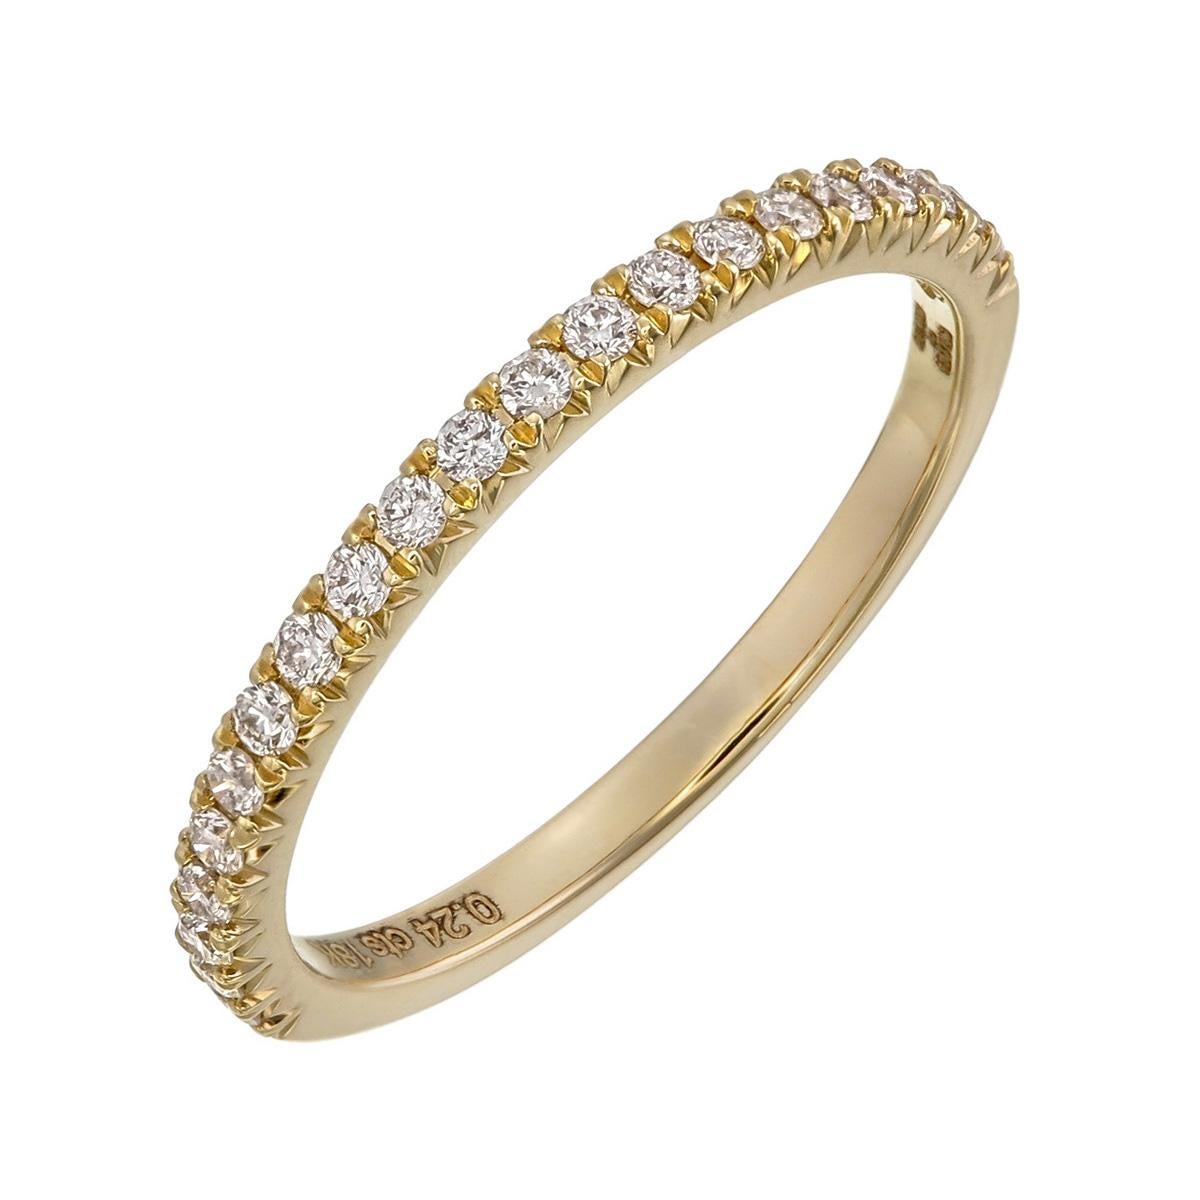 Orloff aus Dänemark;
Dieser Ring aus 18-karätigem Gelbgold mit 21 exquisiten Diamanten der Farbe SI2, F, ist ein Beispiel für zeitlose Eleganz. Das klassische Halbband fängt die Essenz des traditionellen Designs ein und umarmt gleichzeitig die